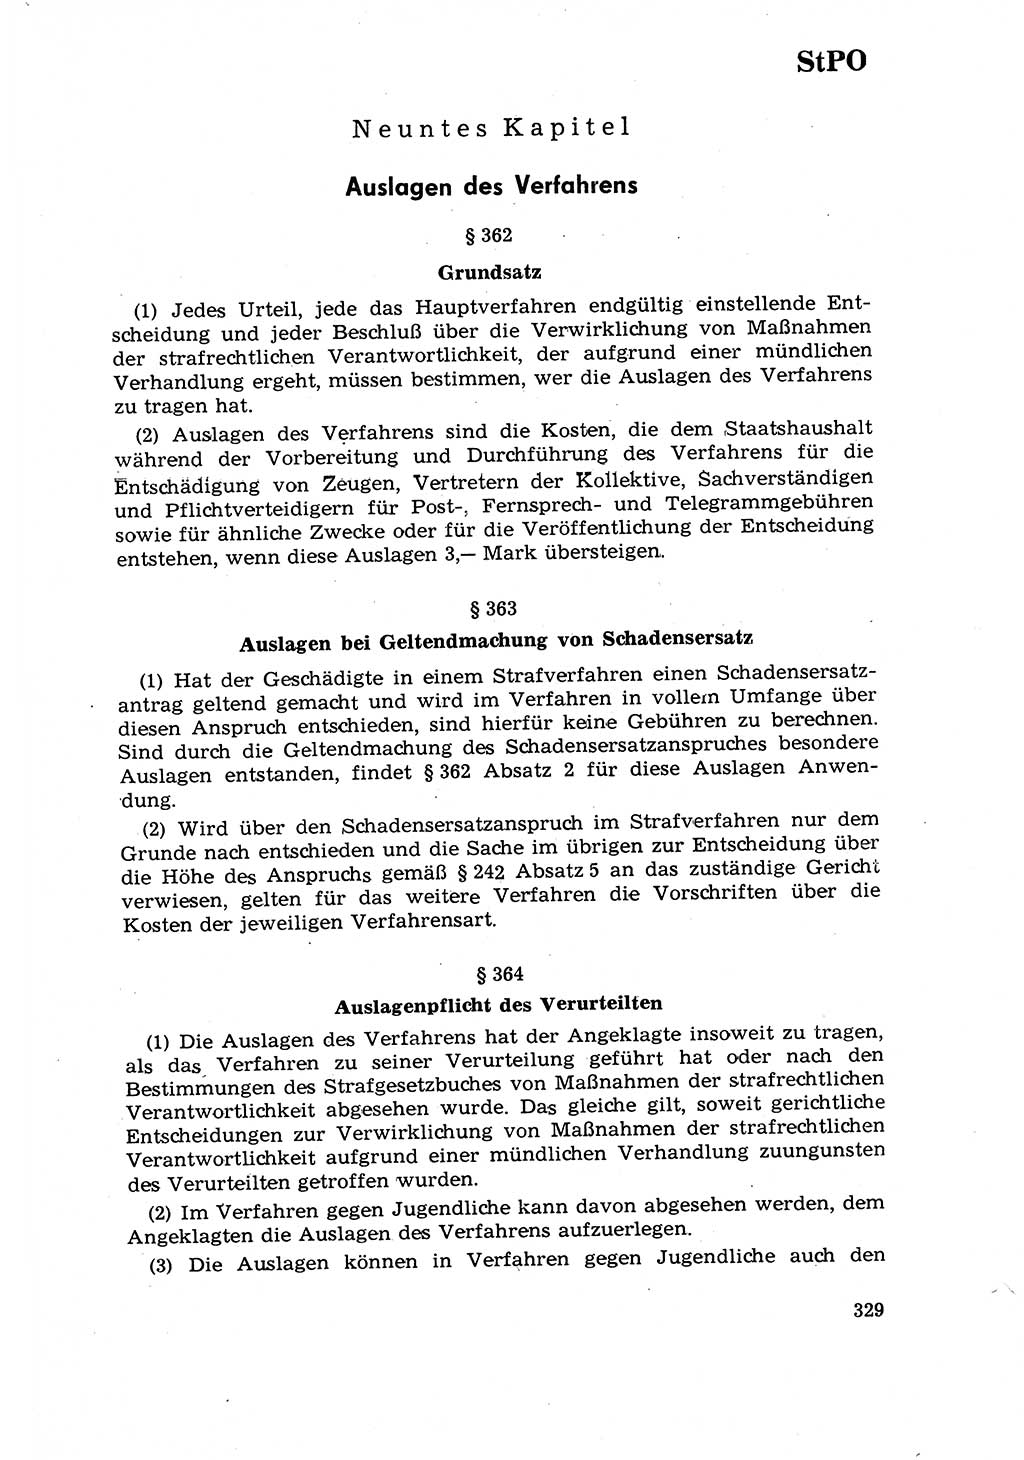 Strafrecht [Deutsche Demokratische Republik (DDR)] 1968, Seite 329 (Strafr. DDR 1968, S. 329)